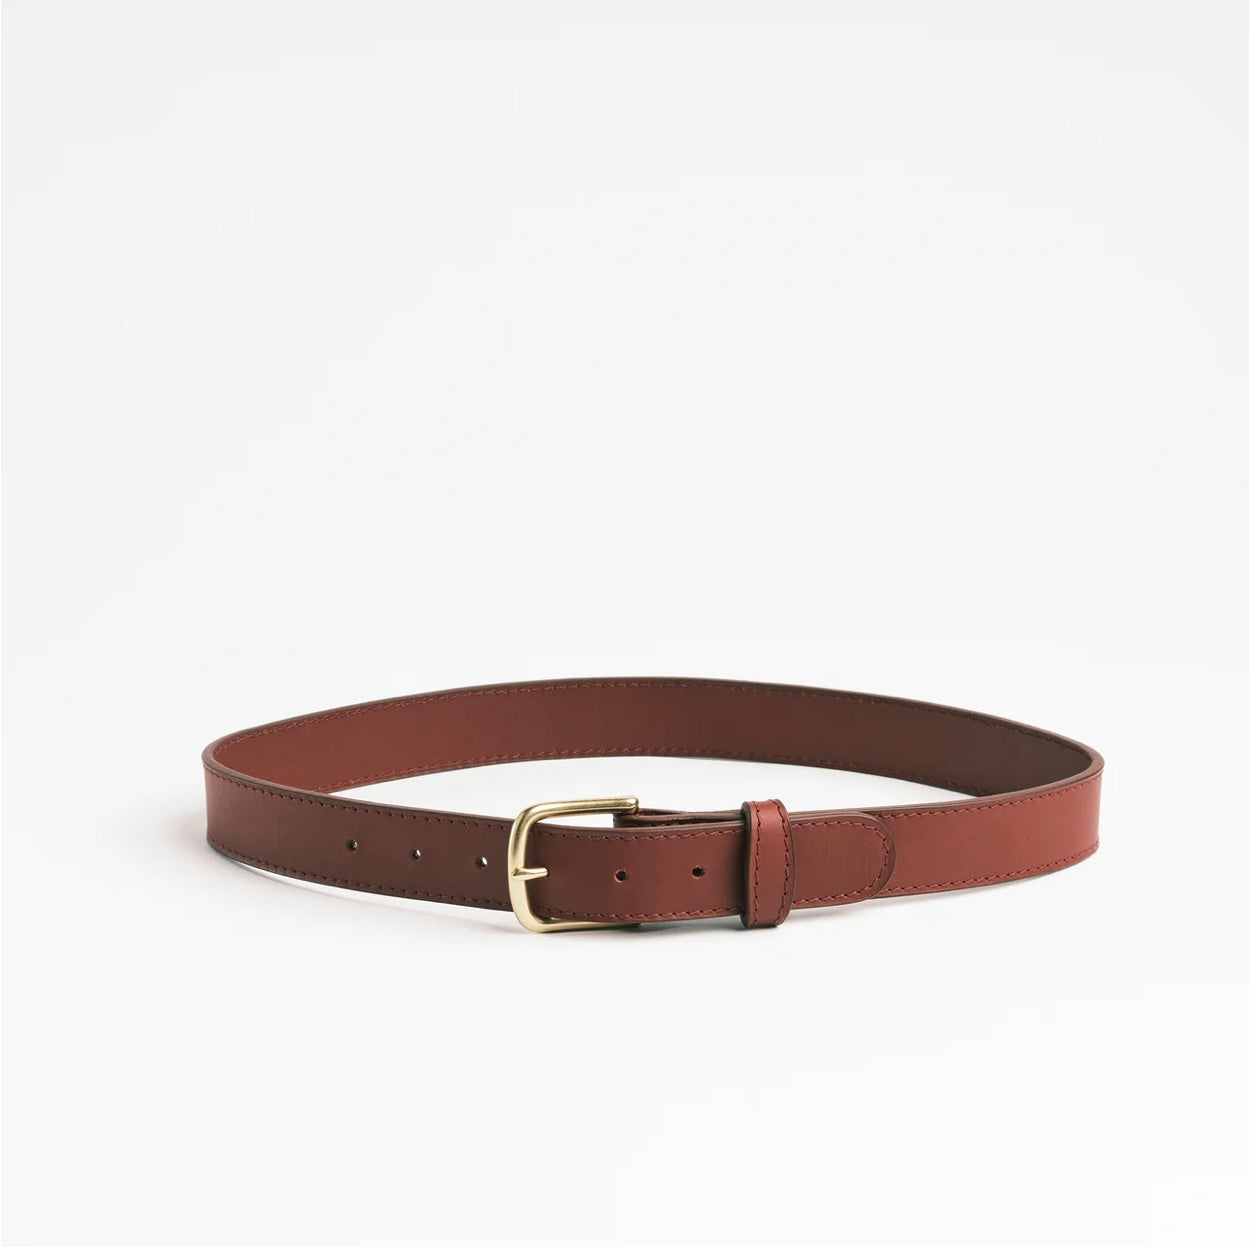 SIMPLE BELT II (wide) - Full Grain Leather Belt